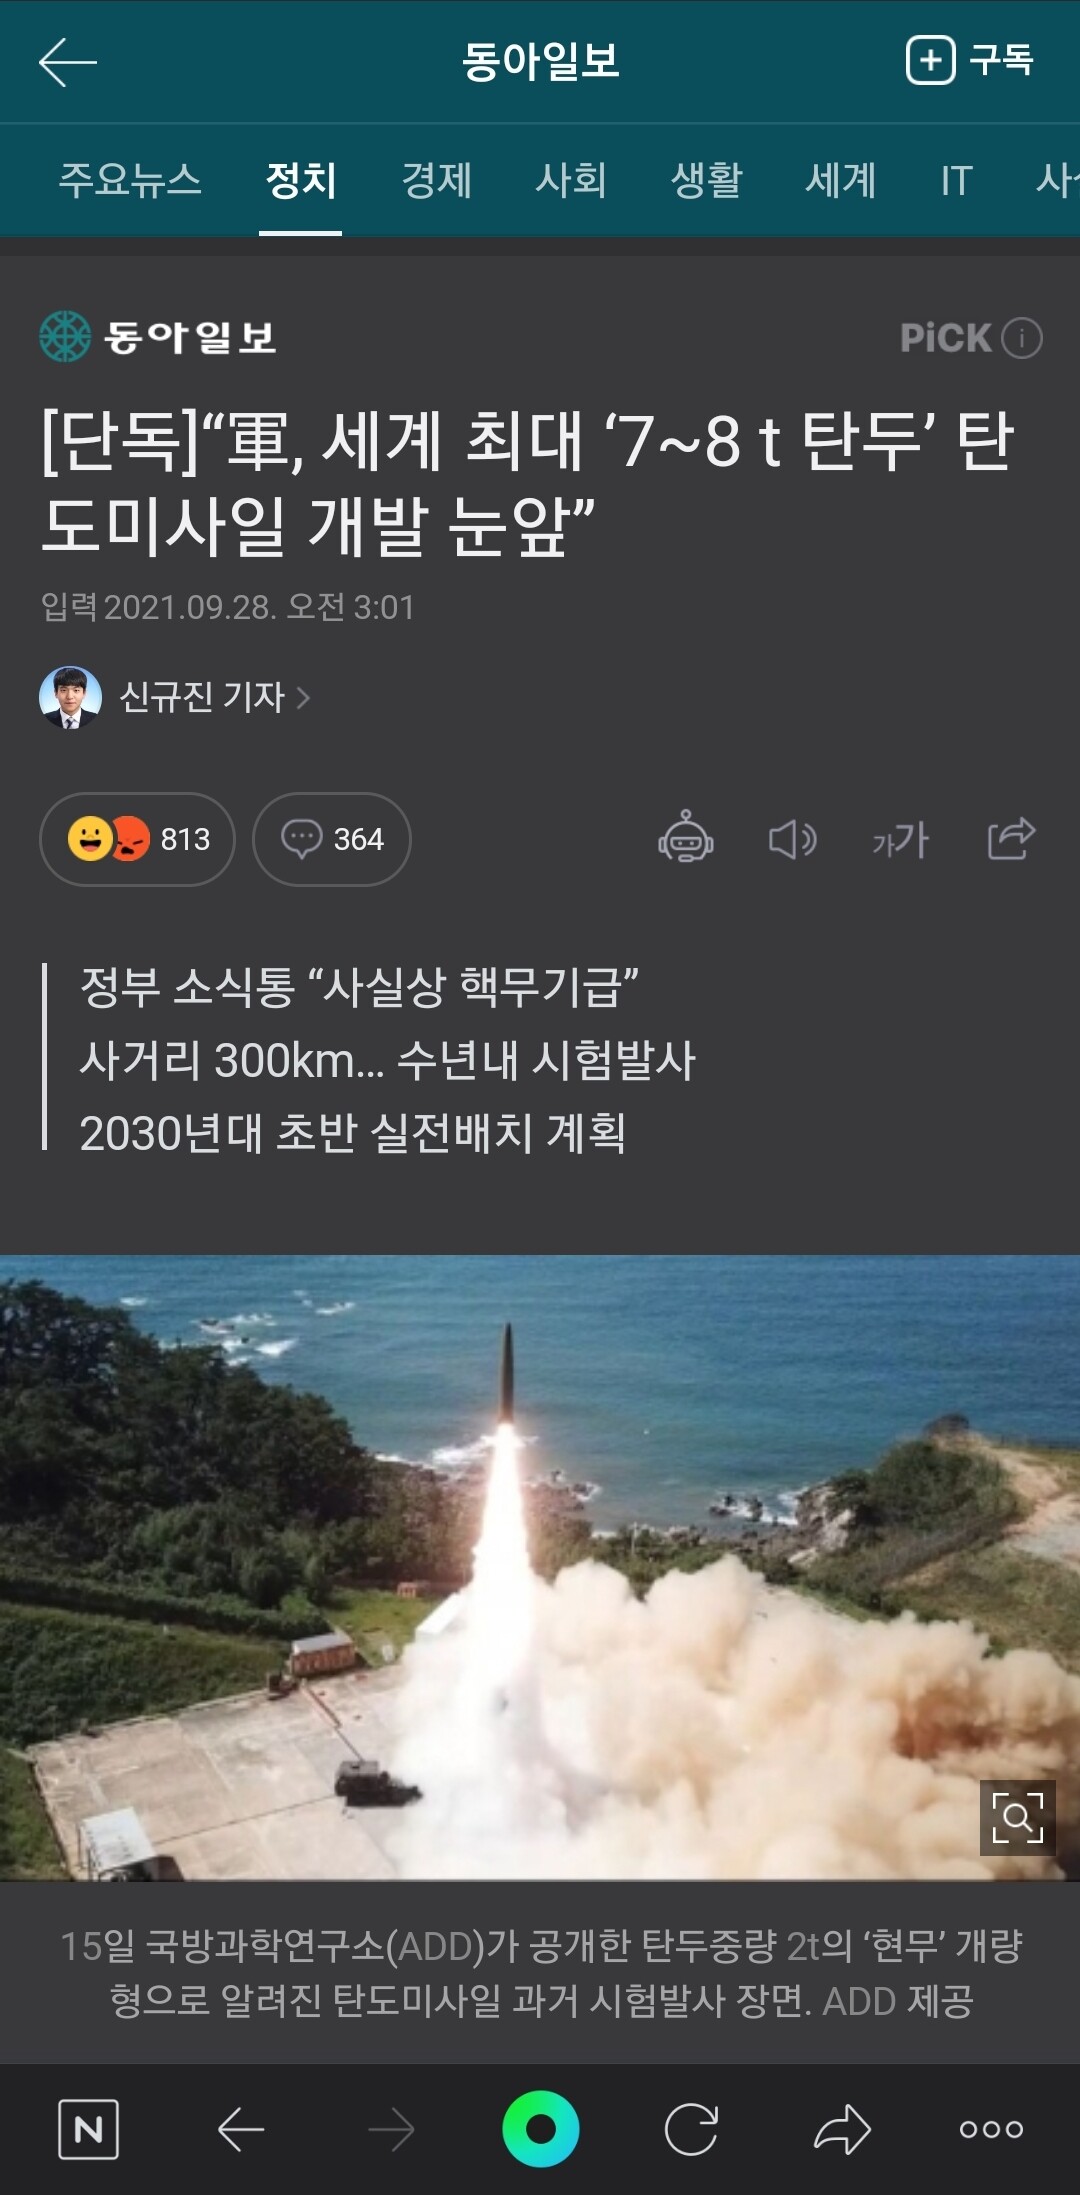 착한 한국은 핵을 만들지 않아요